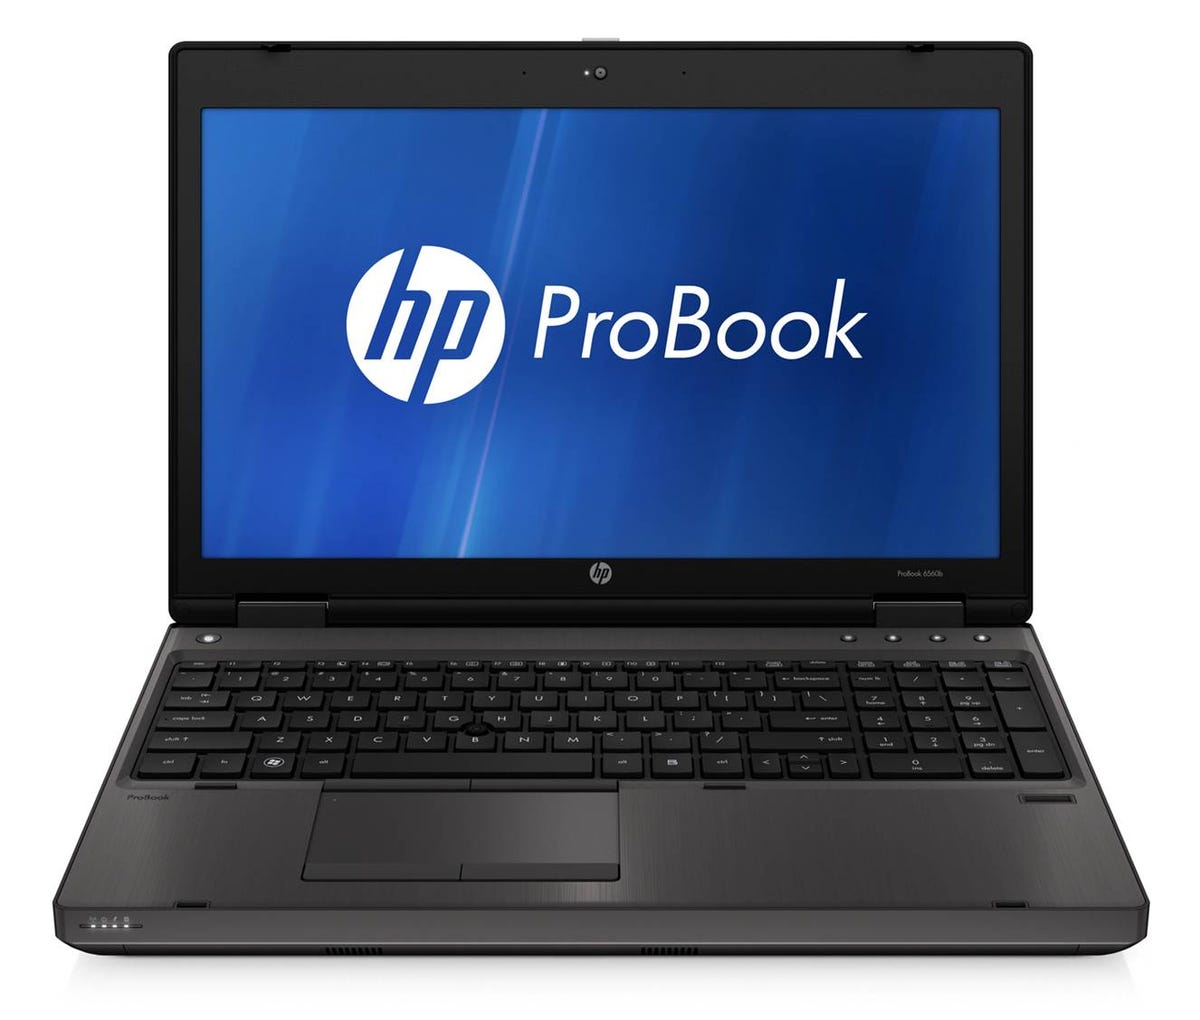 HP_ProBook_b-series_front_open.jpg